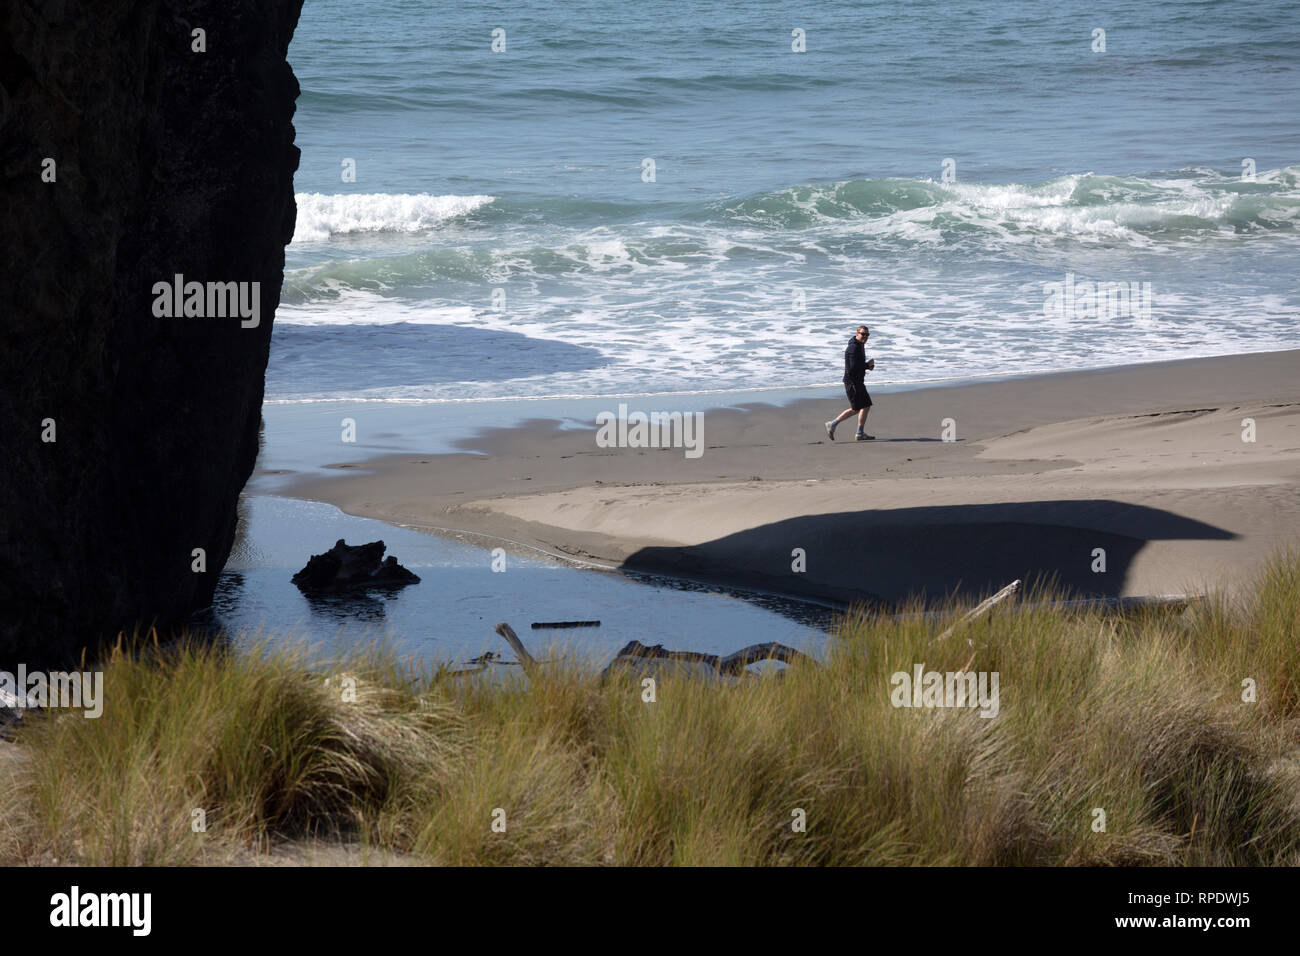 Un solitaire beachcomber marche sur la rive de l'océan Pacifique au large de la route US 101 (l'Oregon Coast Highway), juste au-dessus de la rivière de l'Oregon, au pistolet, l'Amérique Banque D'Images